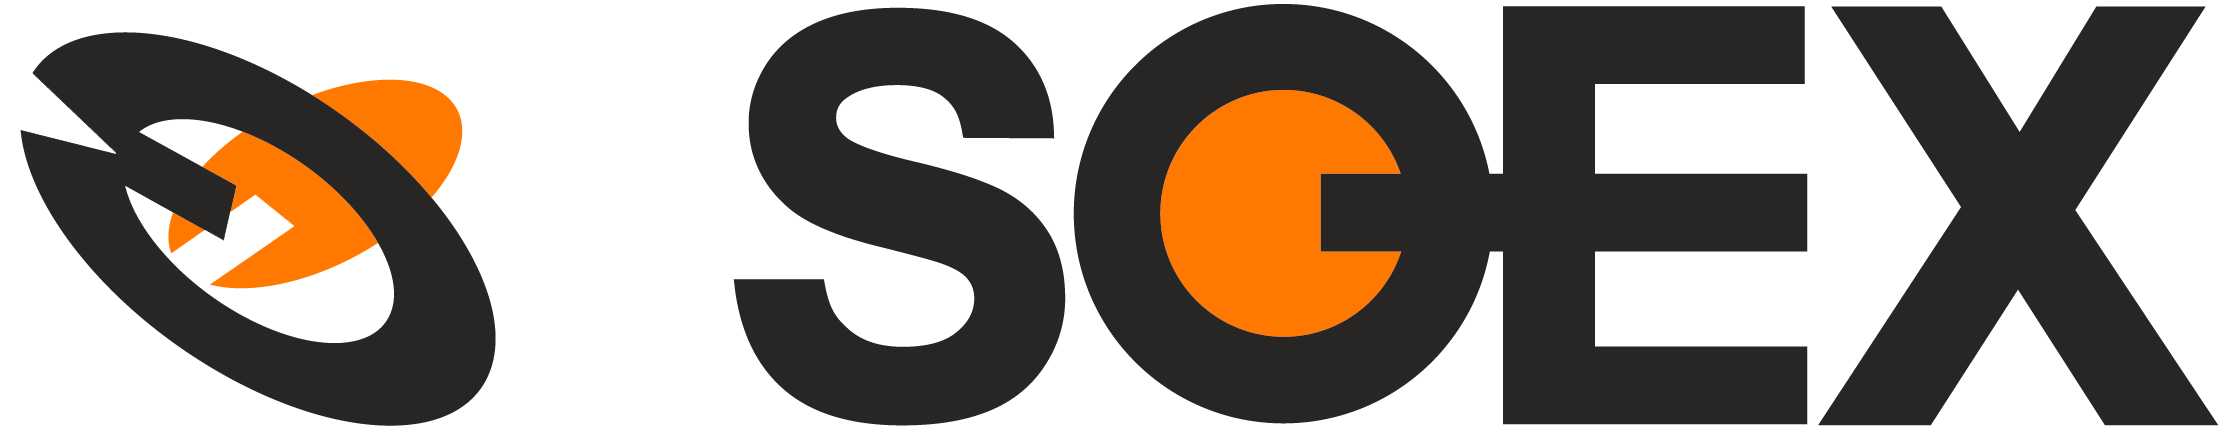 soex_logo